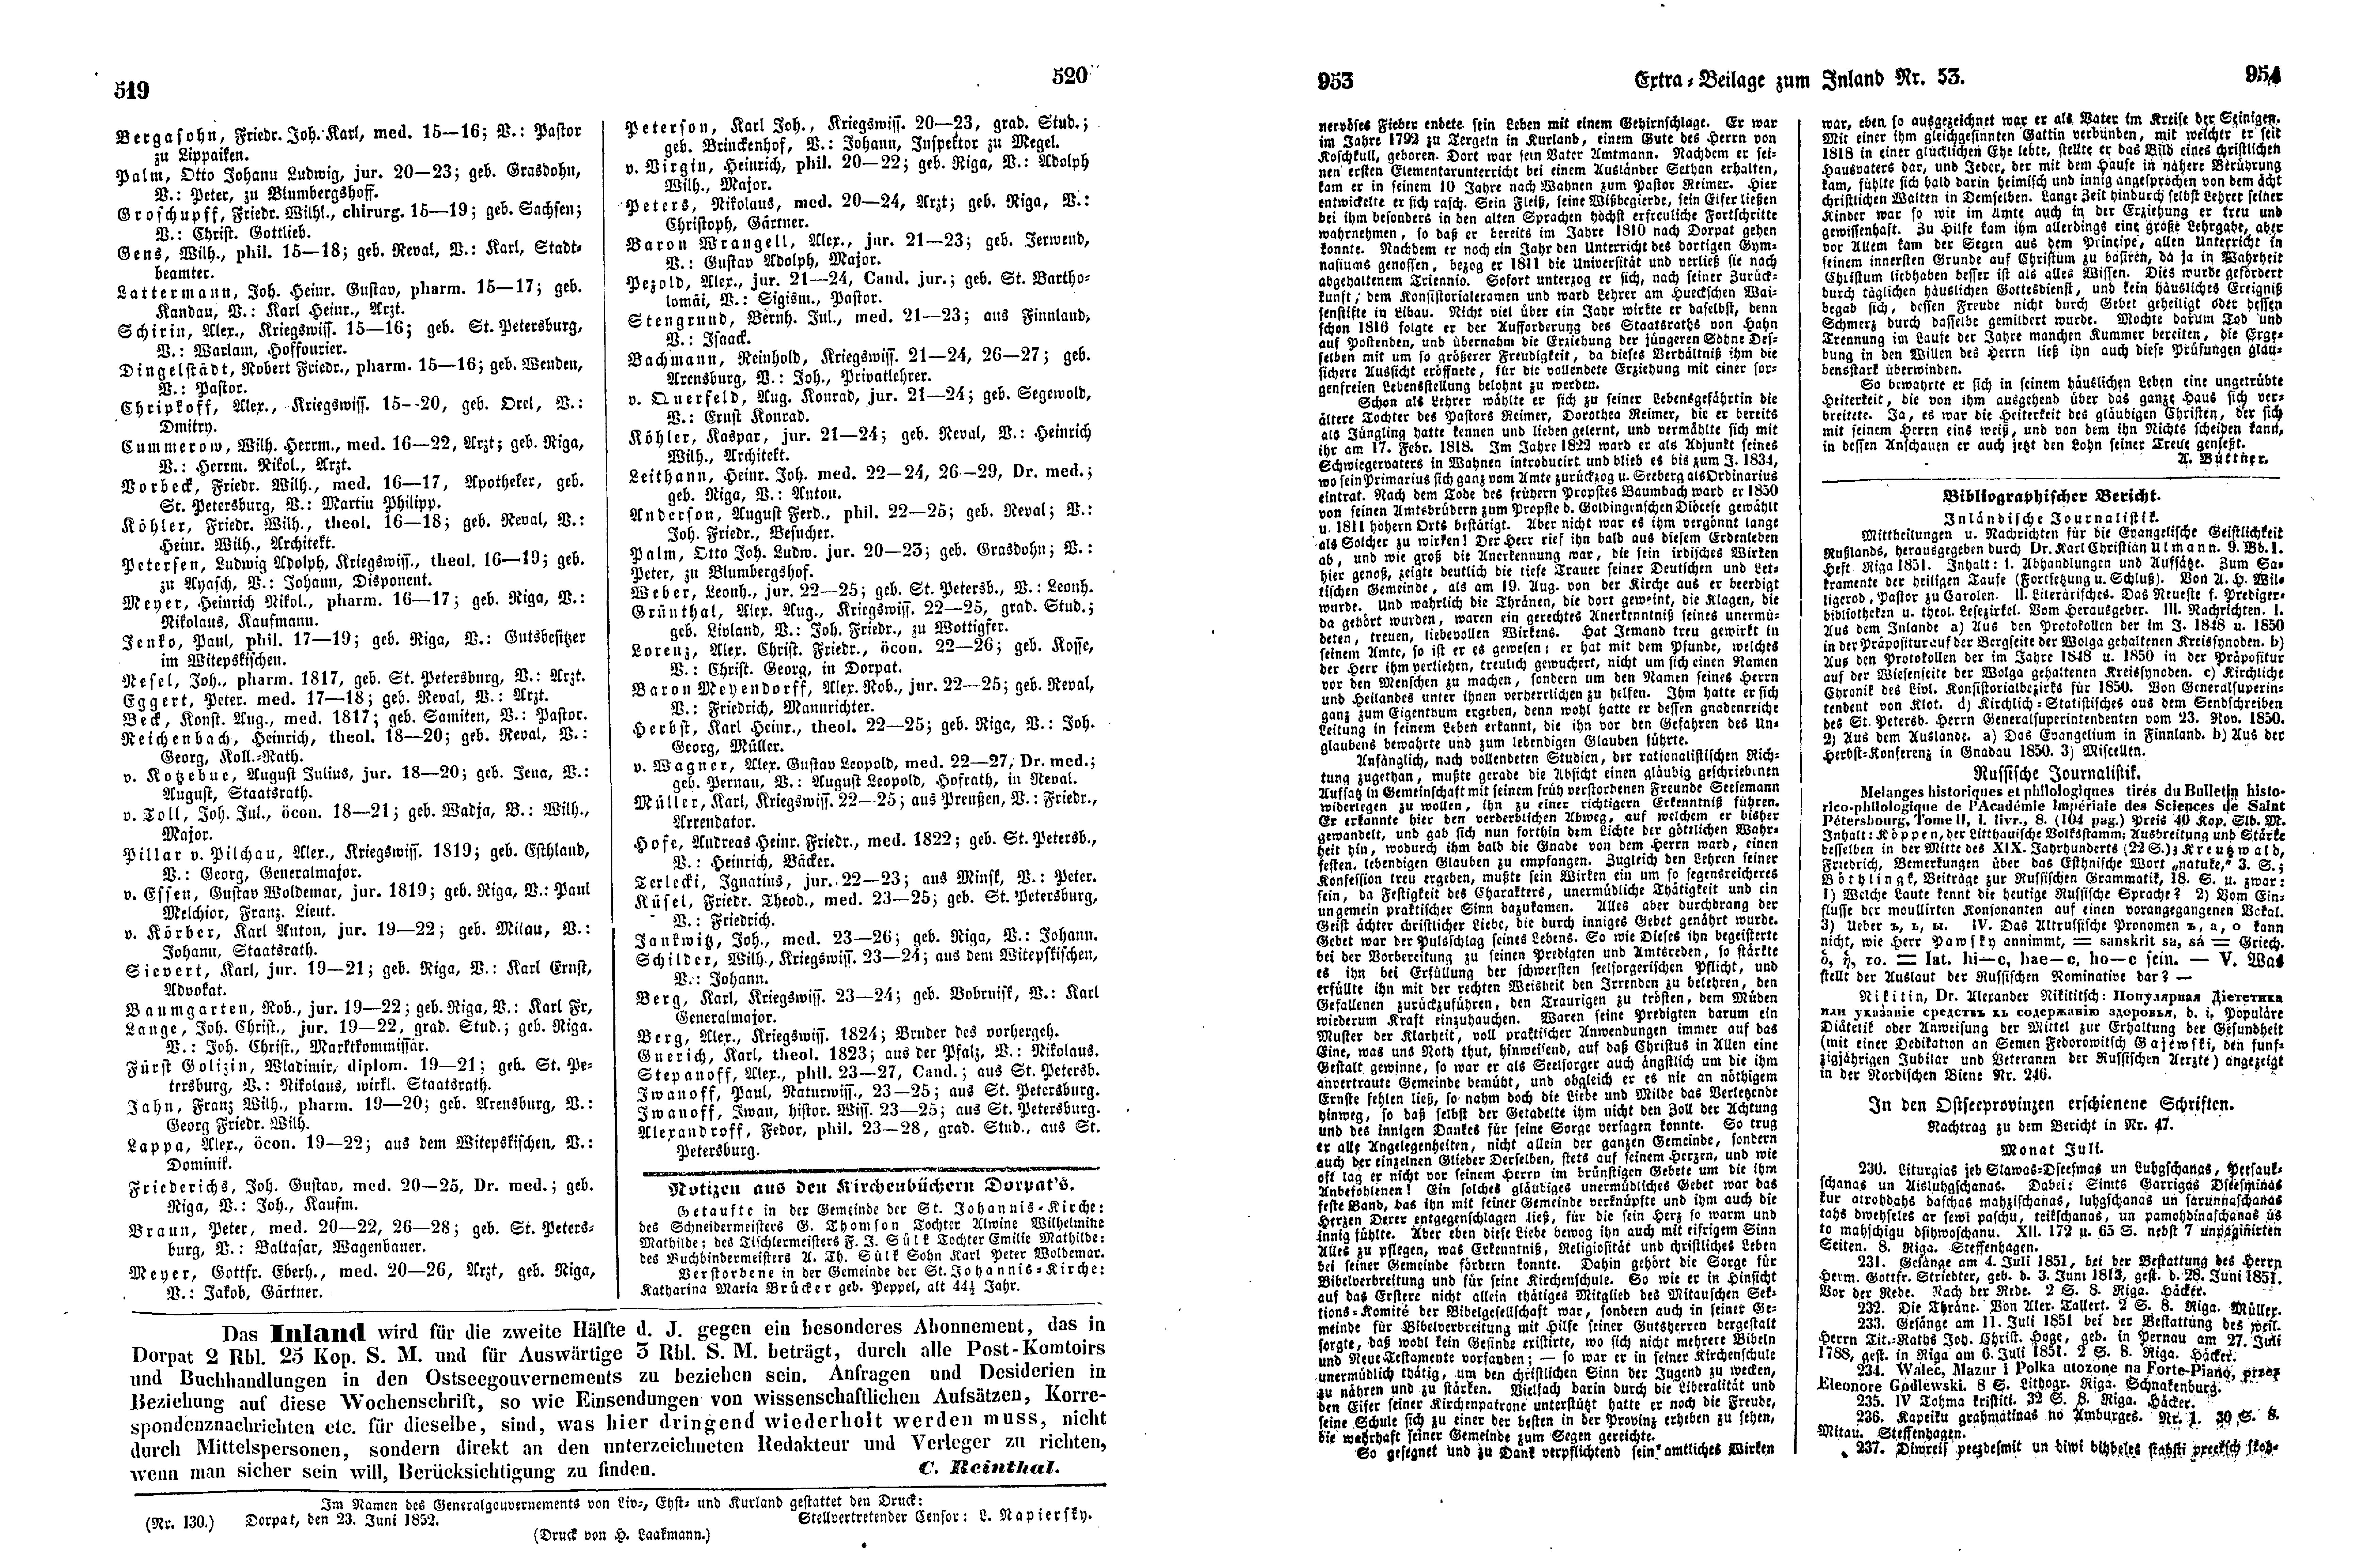 Das Inland [17] (1852) | 134. (519-954) Основной текст